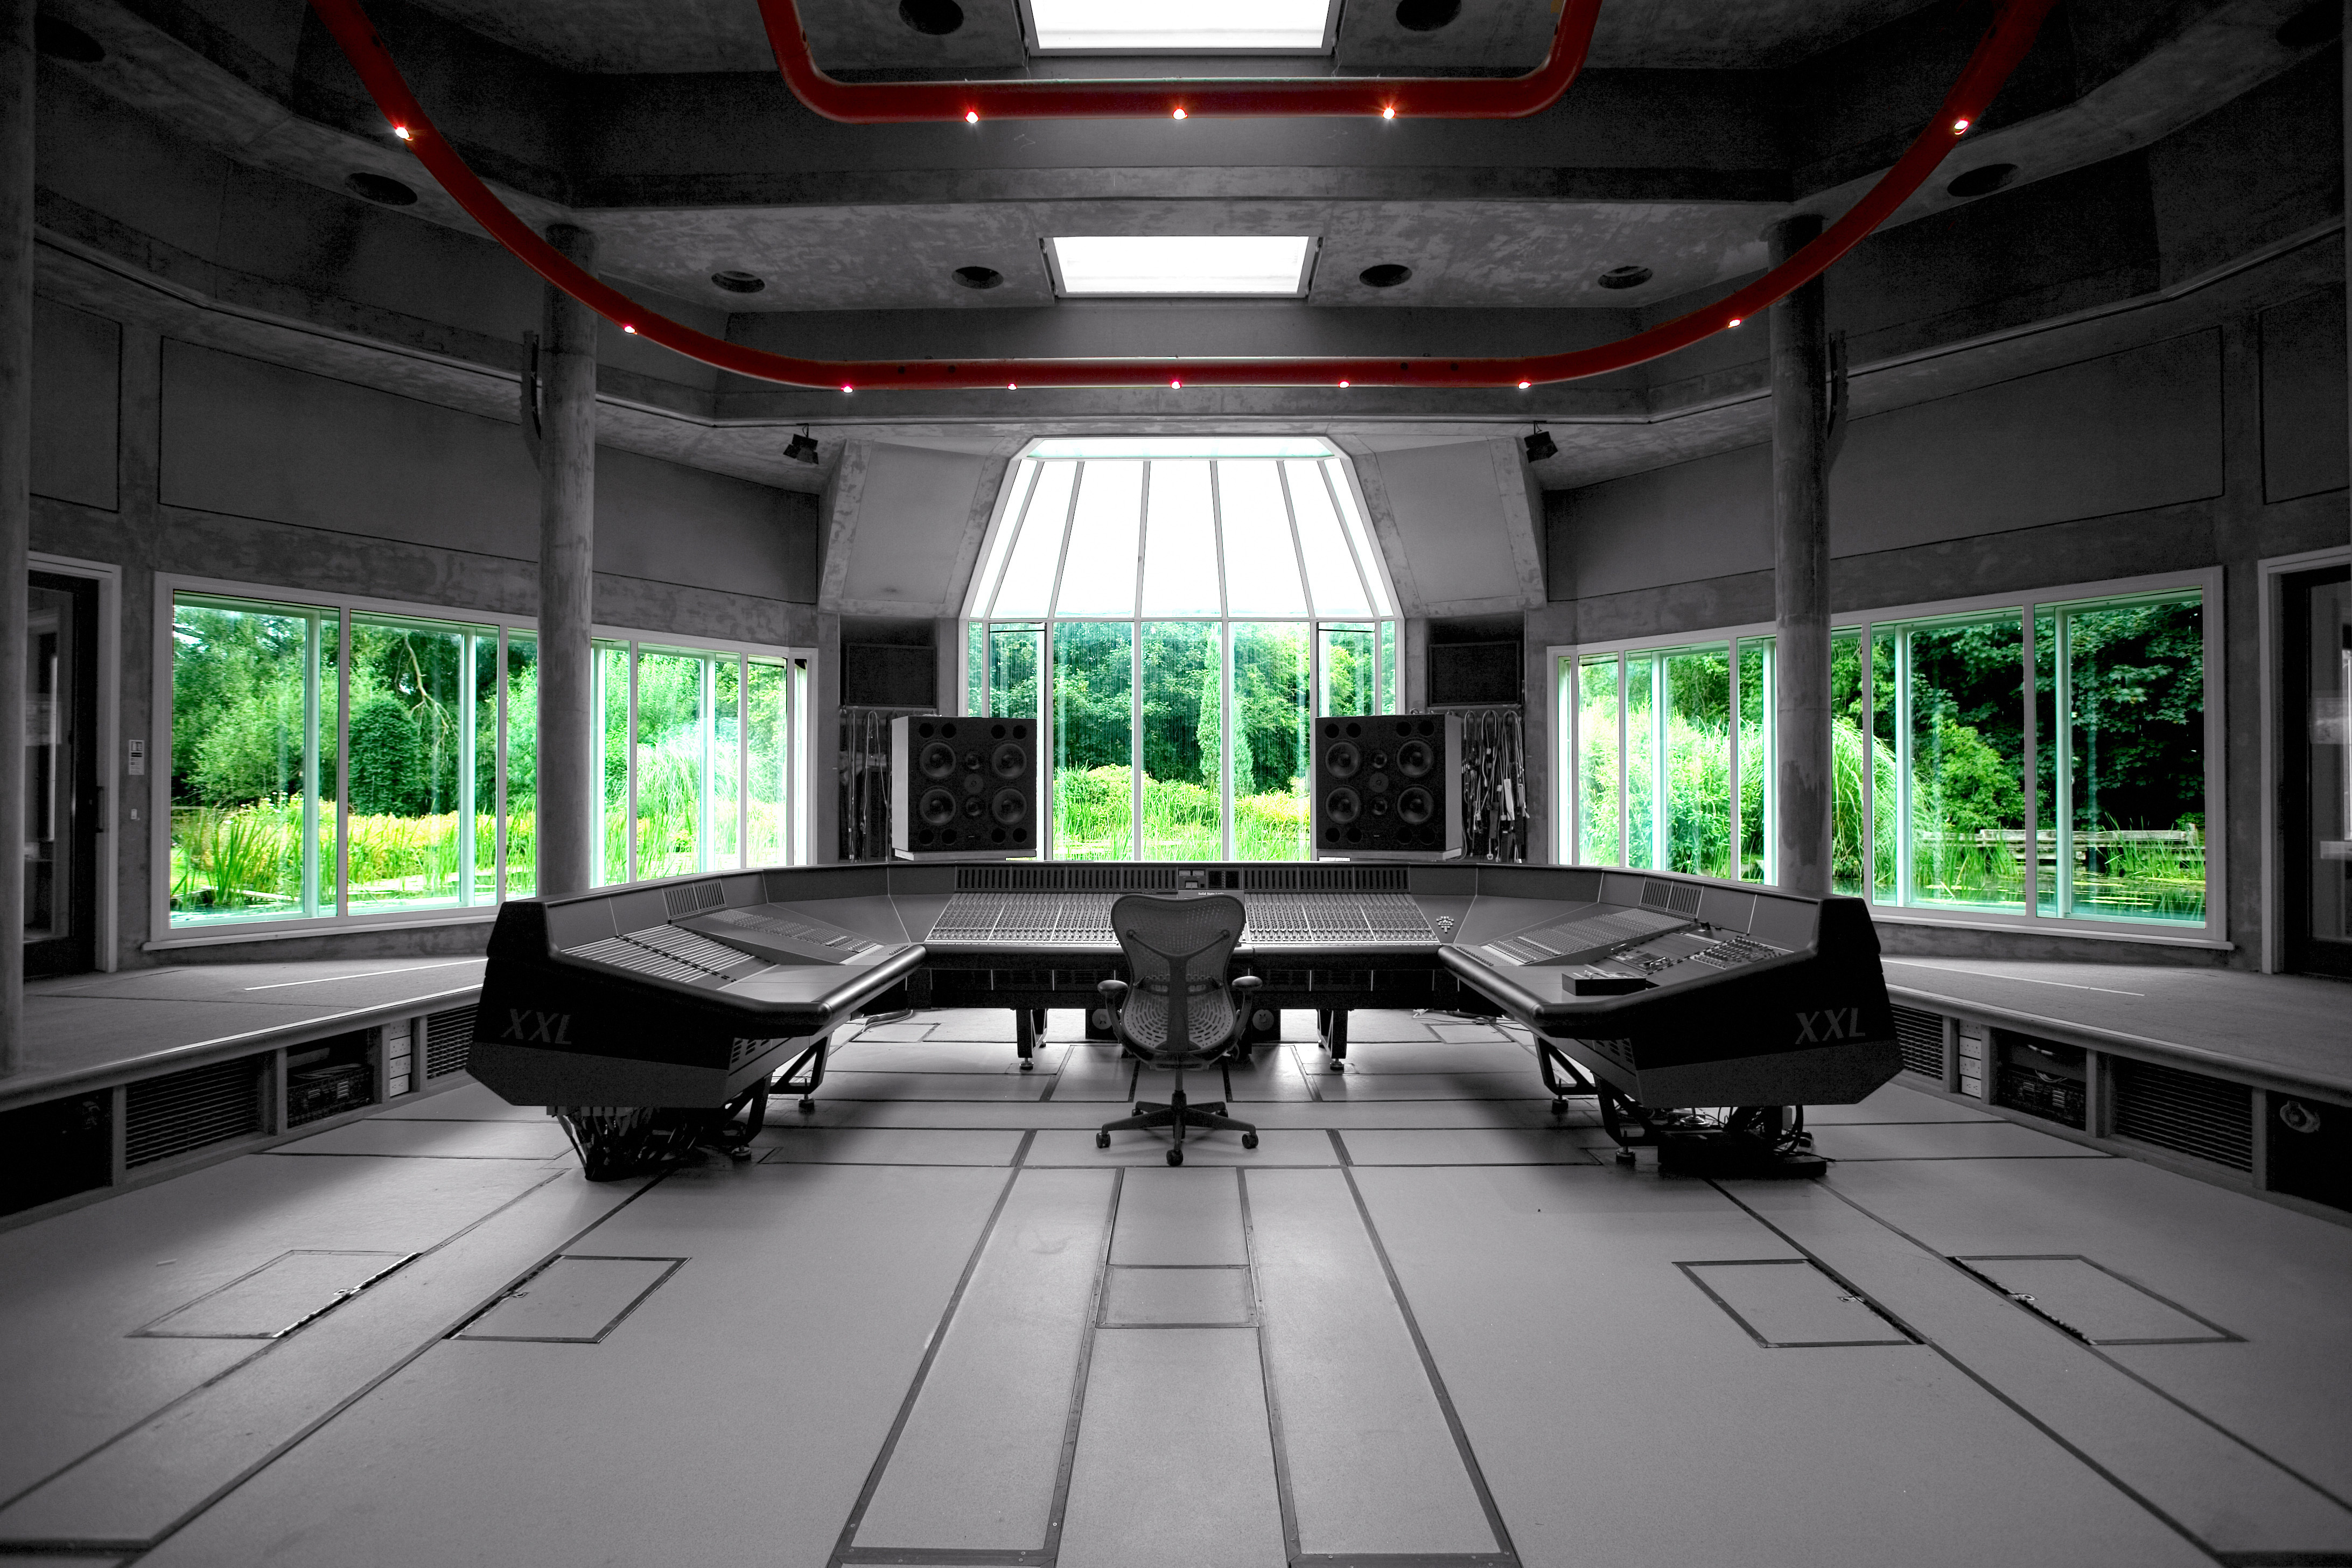 Interior Studio Mixer Controls Speakers Sound Music Panel